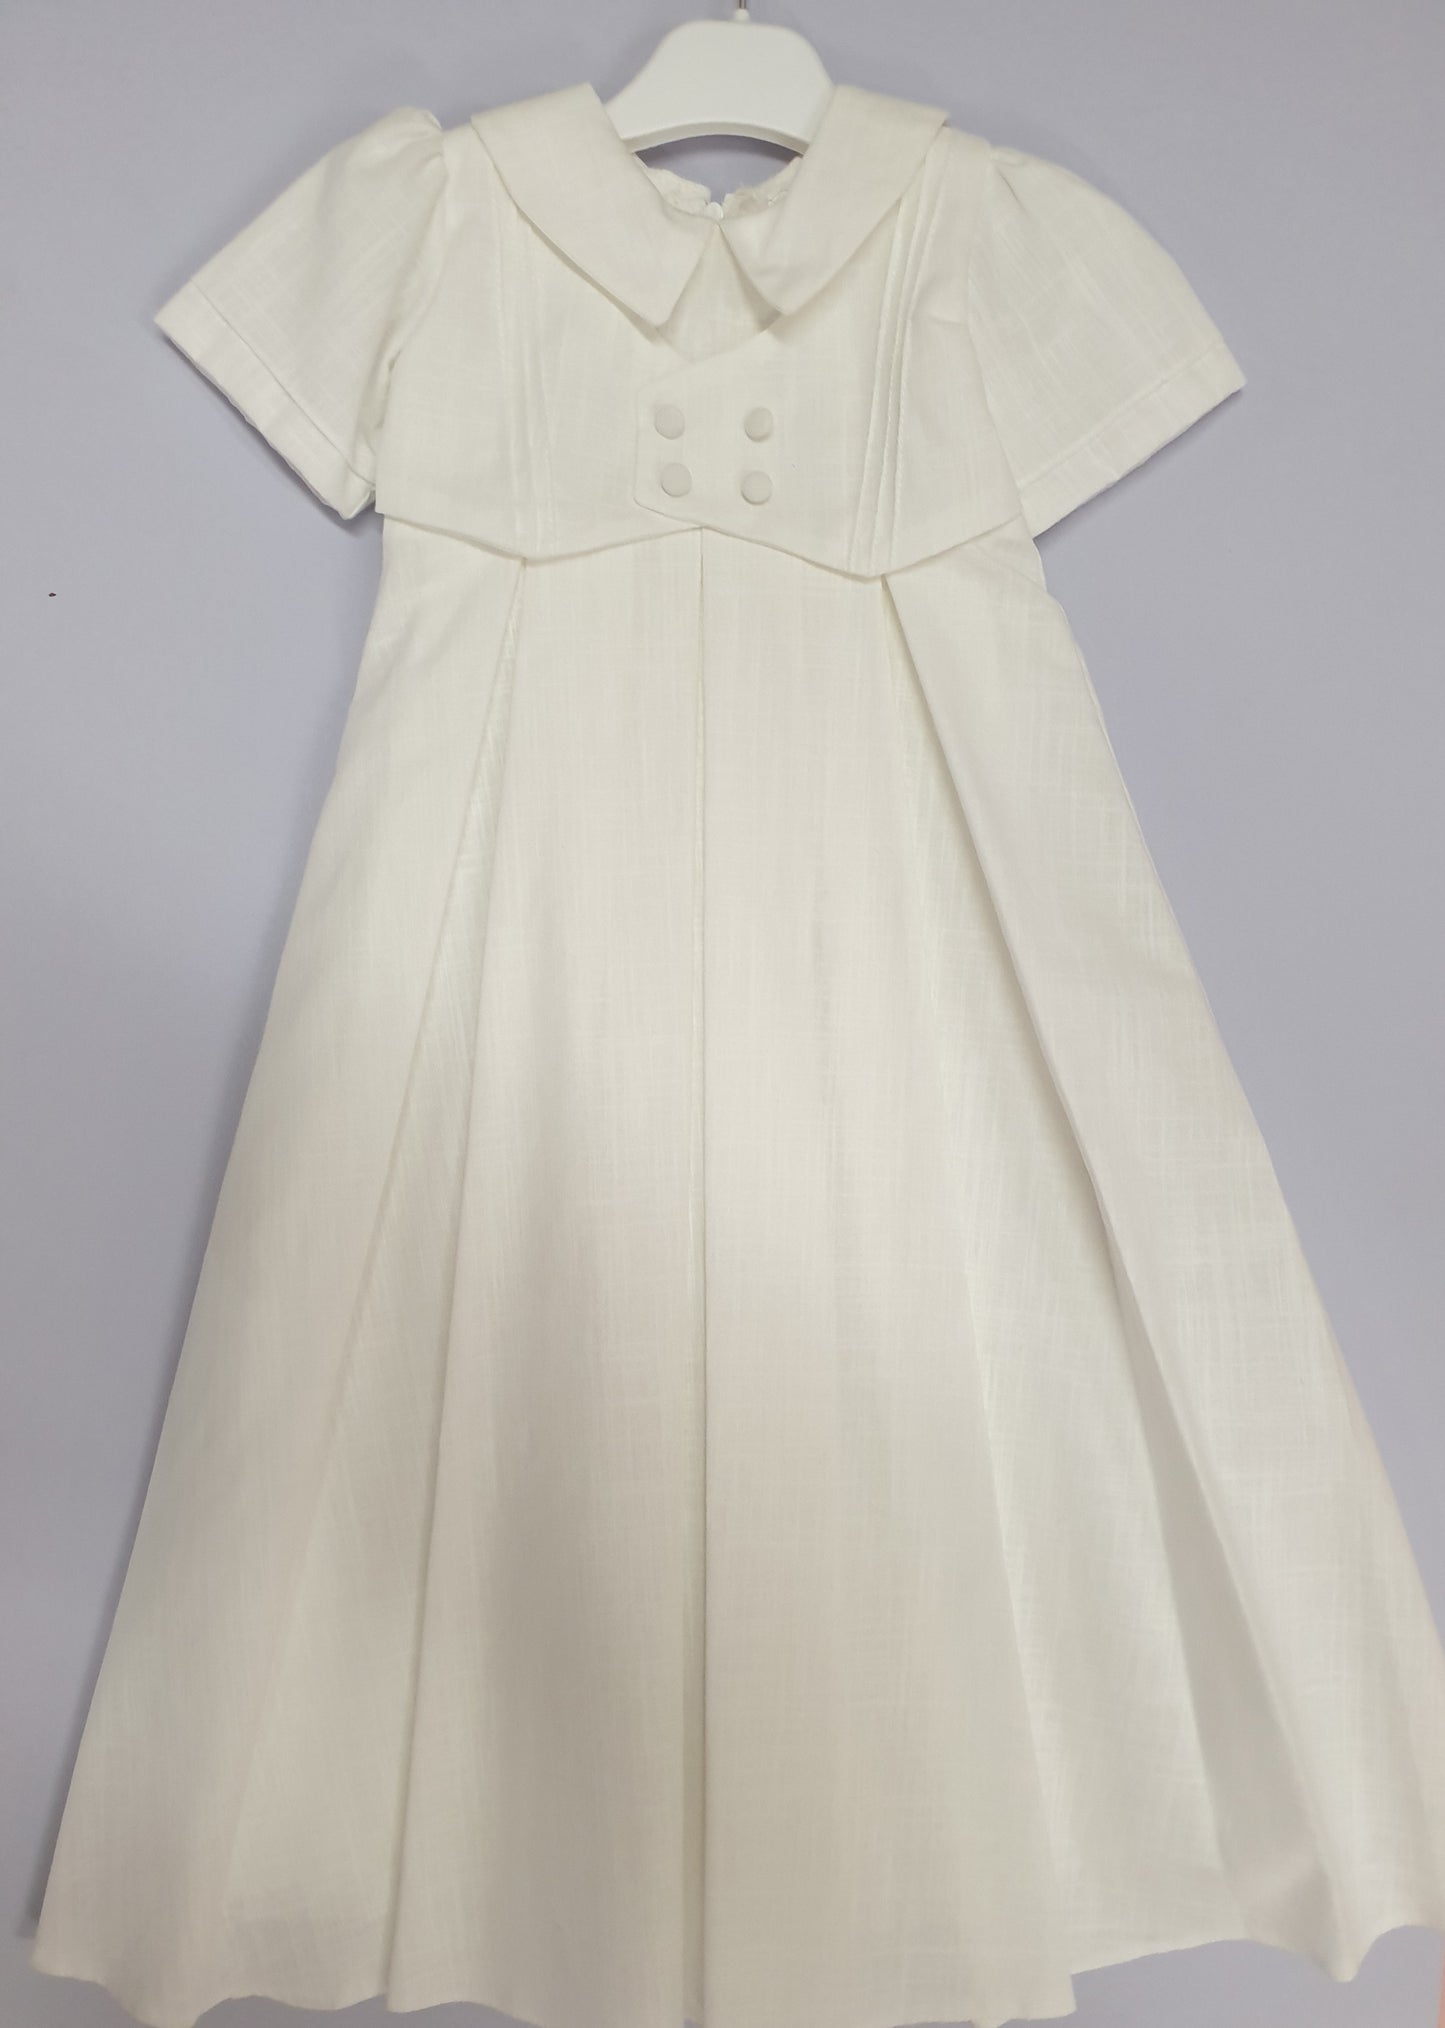 Unisex Christening gown